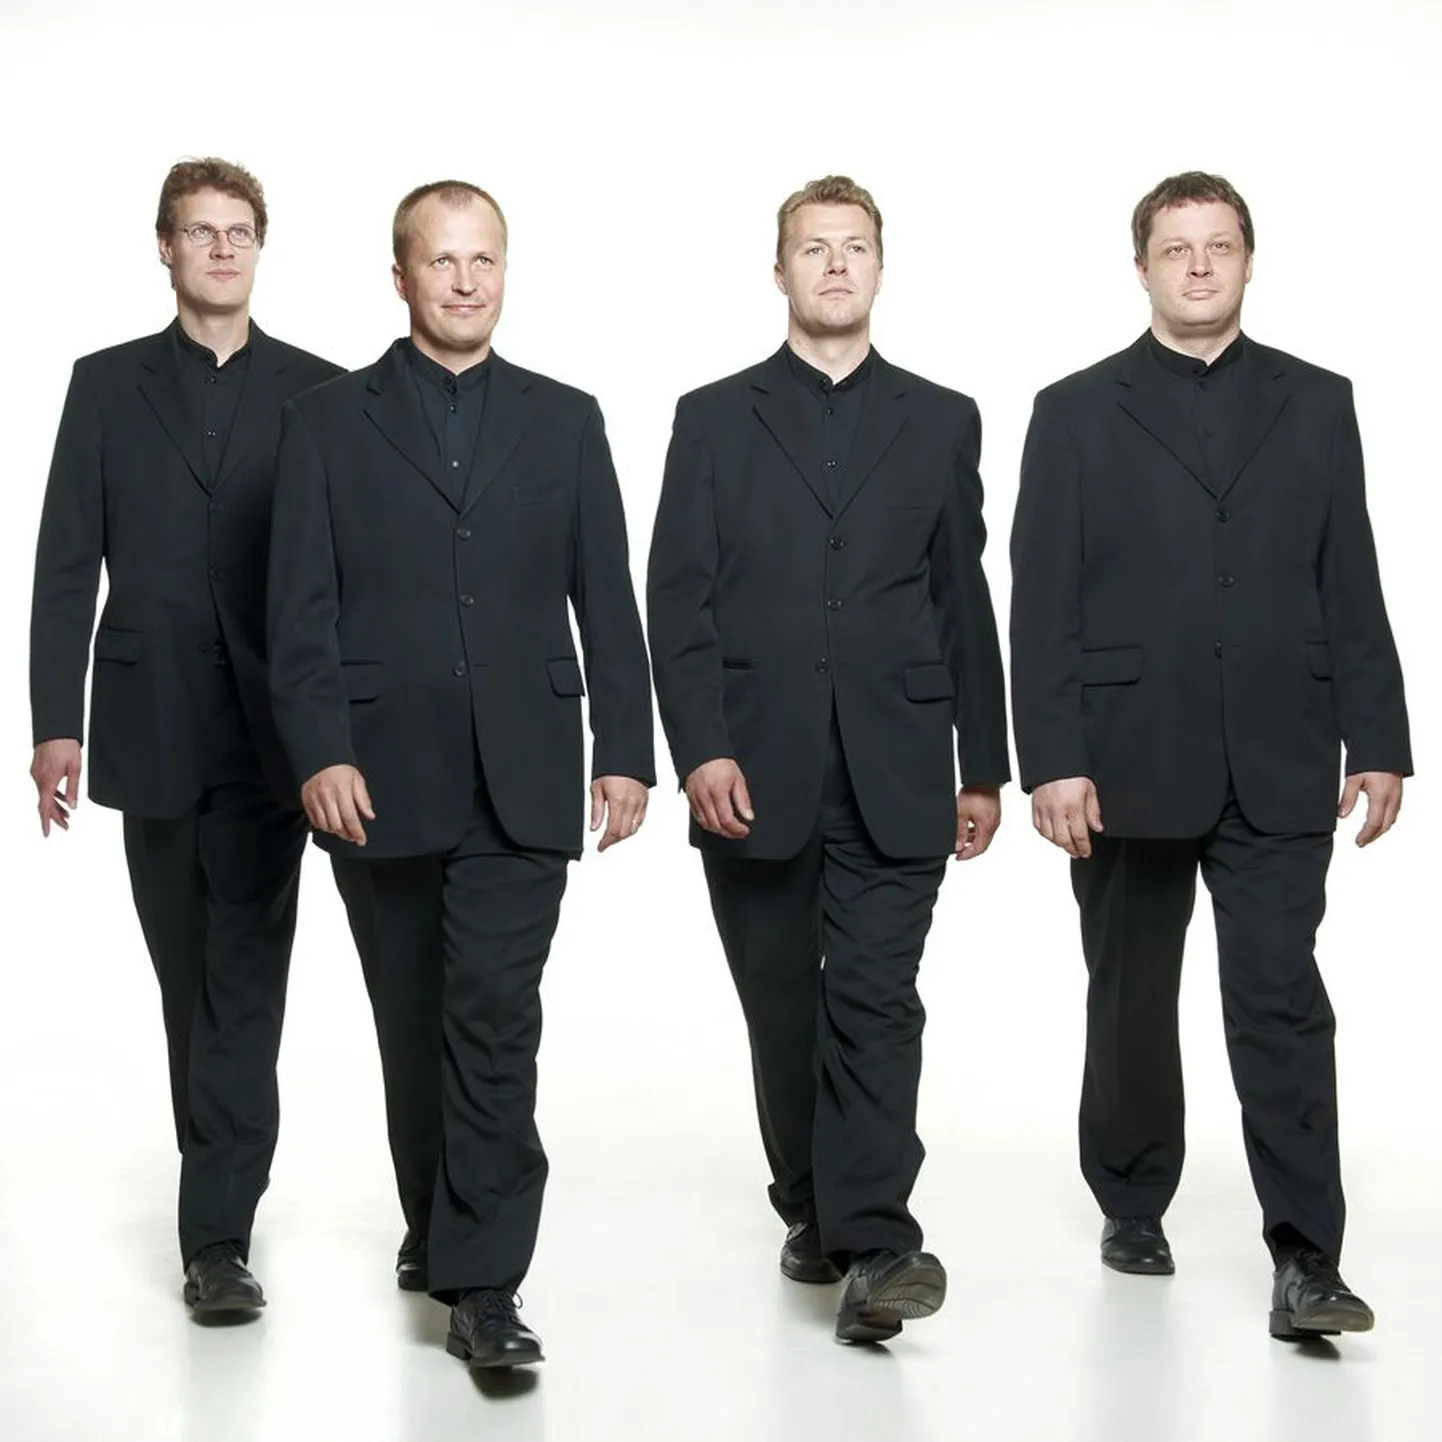 Eesti filharmoonia kammerkoori parimad tenorid ja bassid laulavad homme pärimusmuusika aidas.